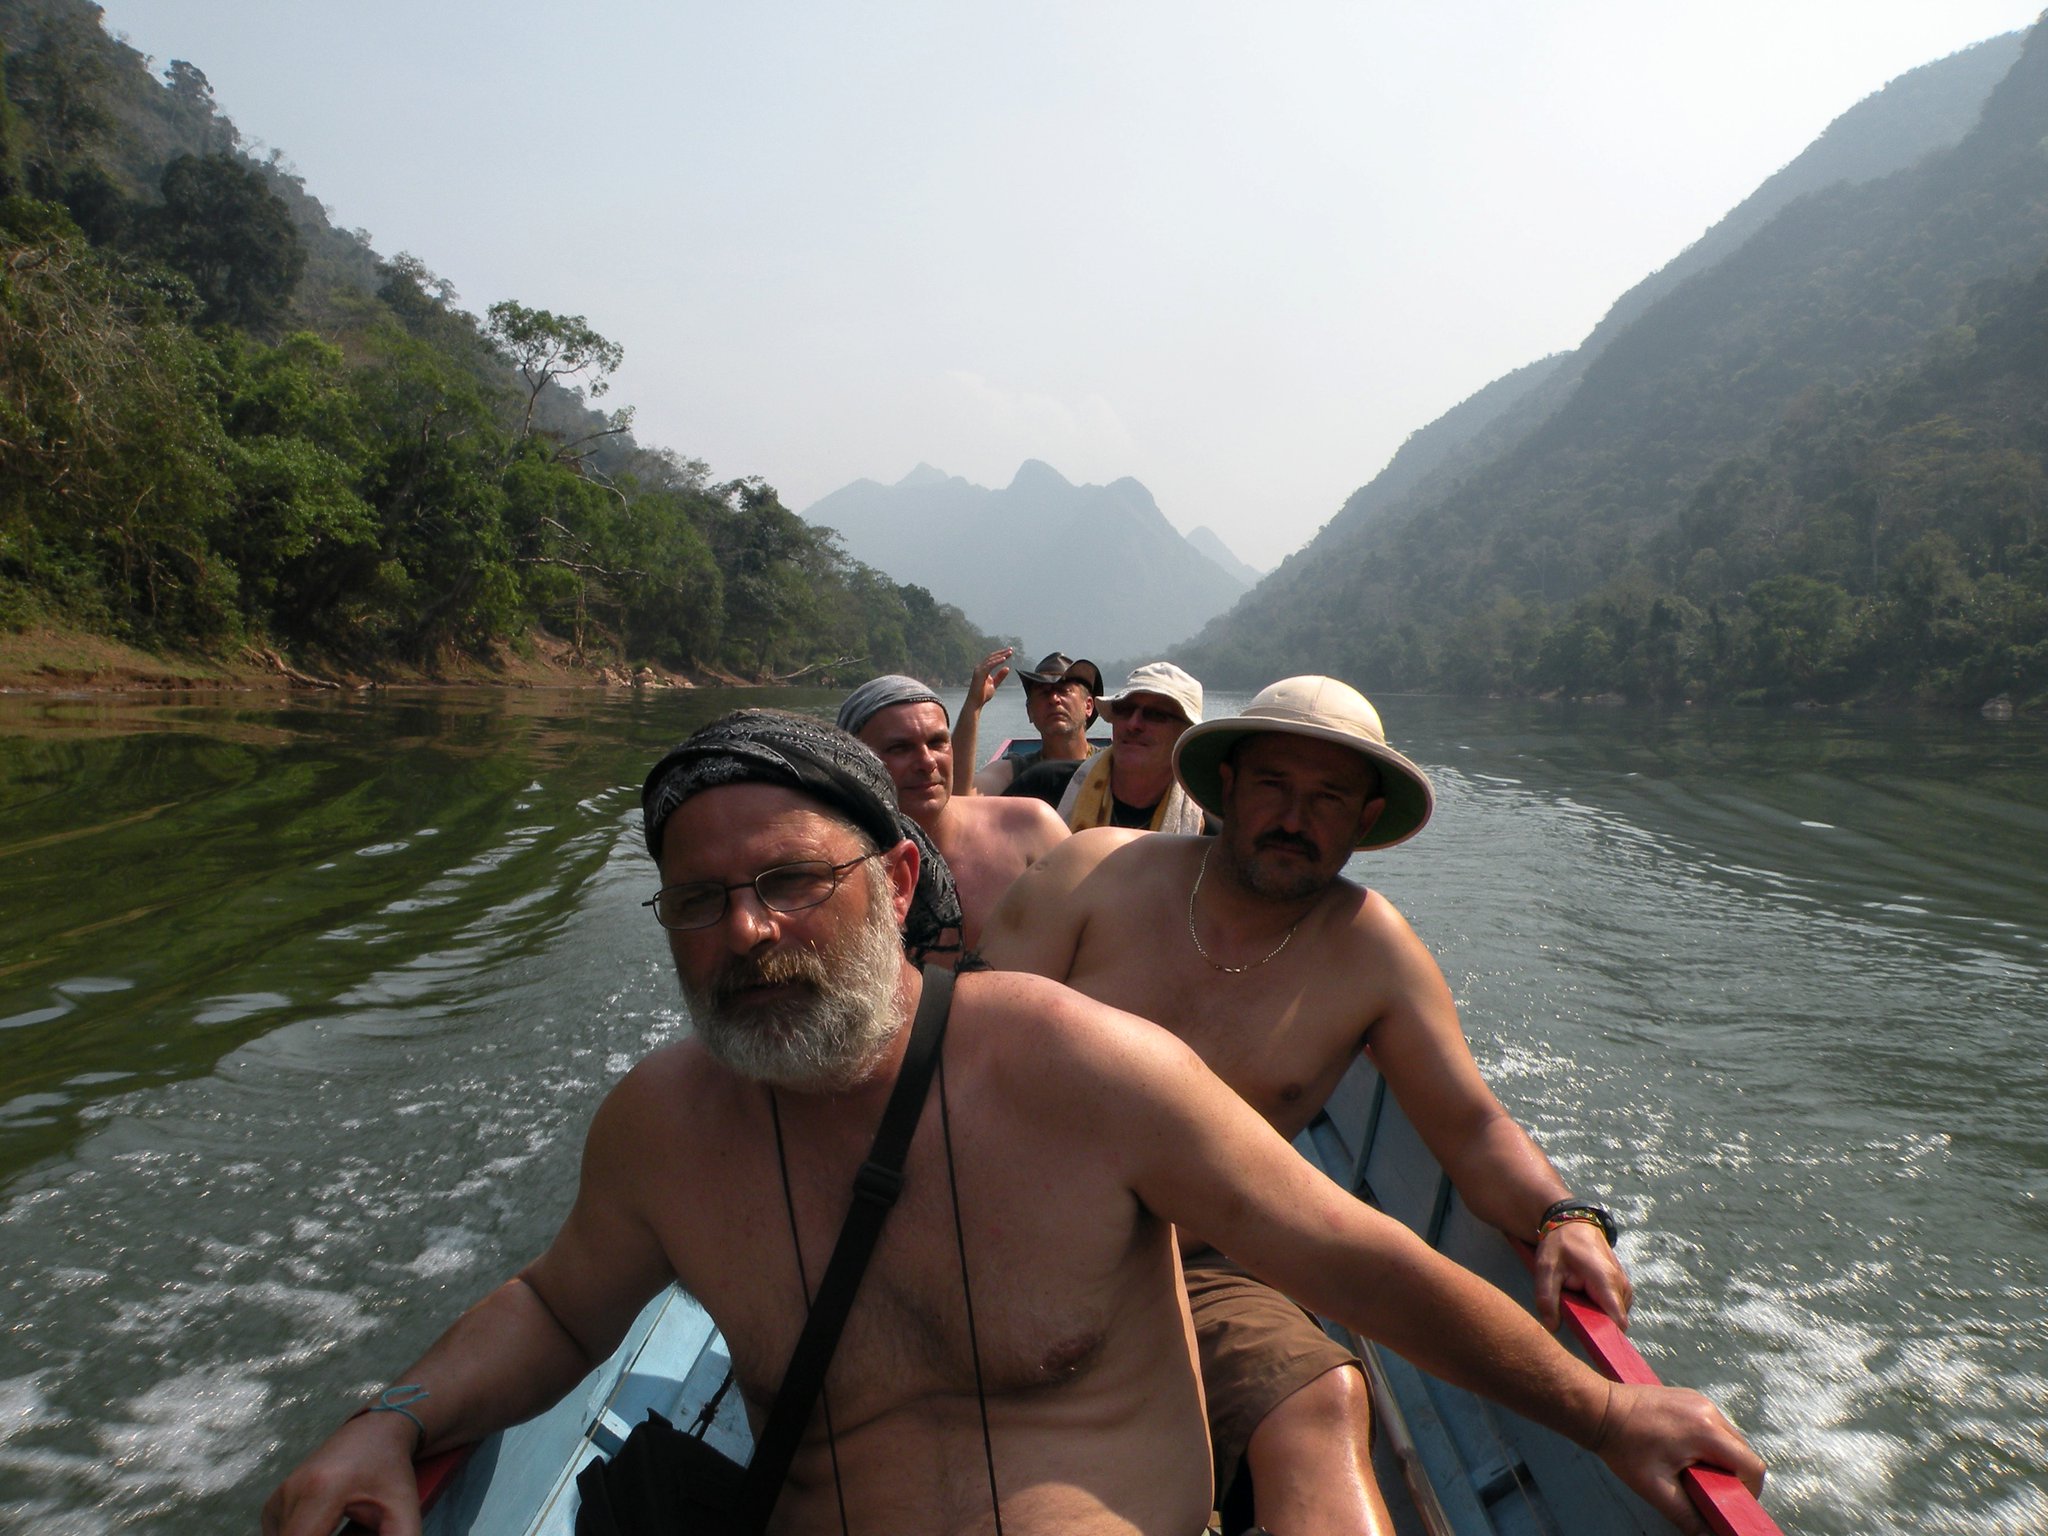 Mała łódeczka płynie rwącą rzeką przez dżunglę. W łodzi siedzi pięciu mężczyzn. Są zaniepokojeni swoim położeniem, nie mają kontroli nad żywiołem i otaczającą ich naturą.